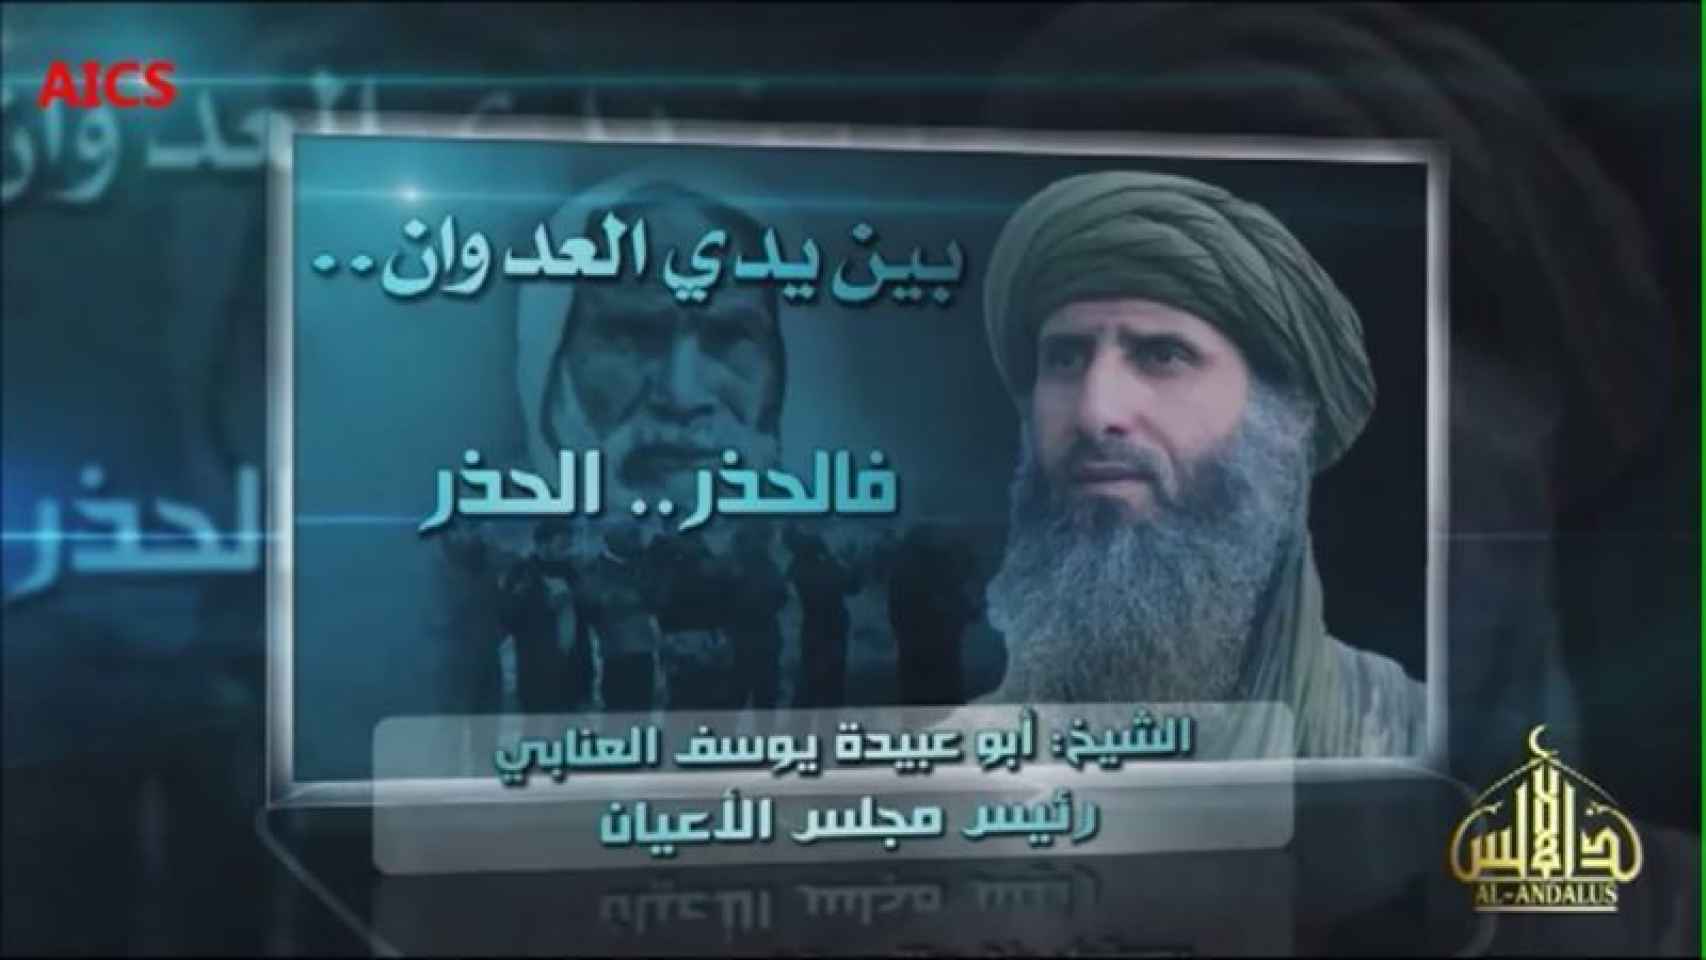 El número dos de Al Qaeda en el Magreb, Al-Anabi, lanza la proclama.